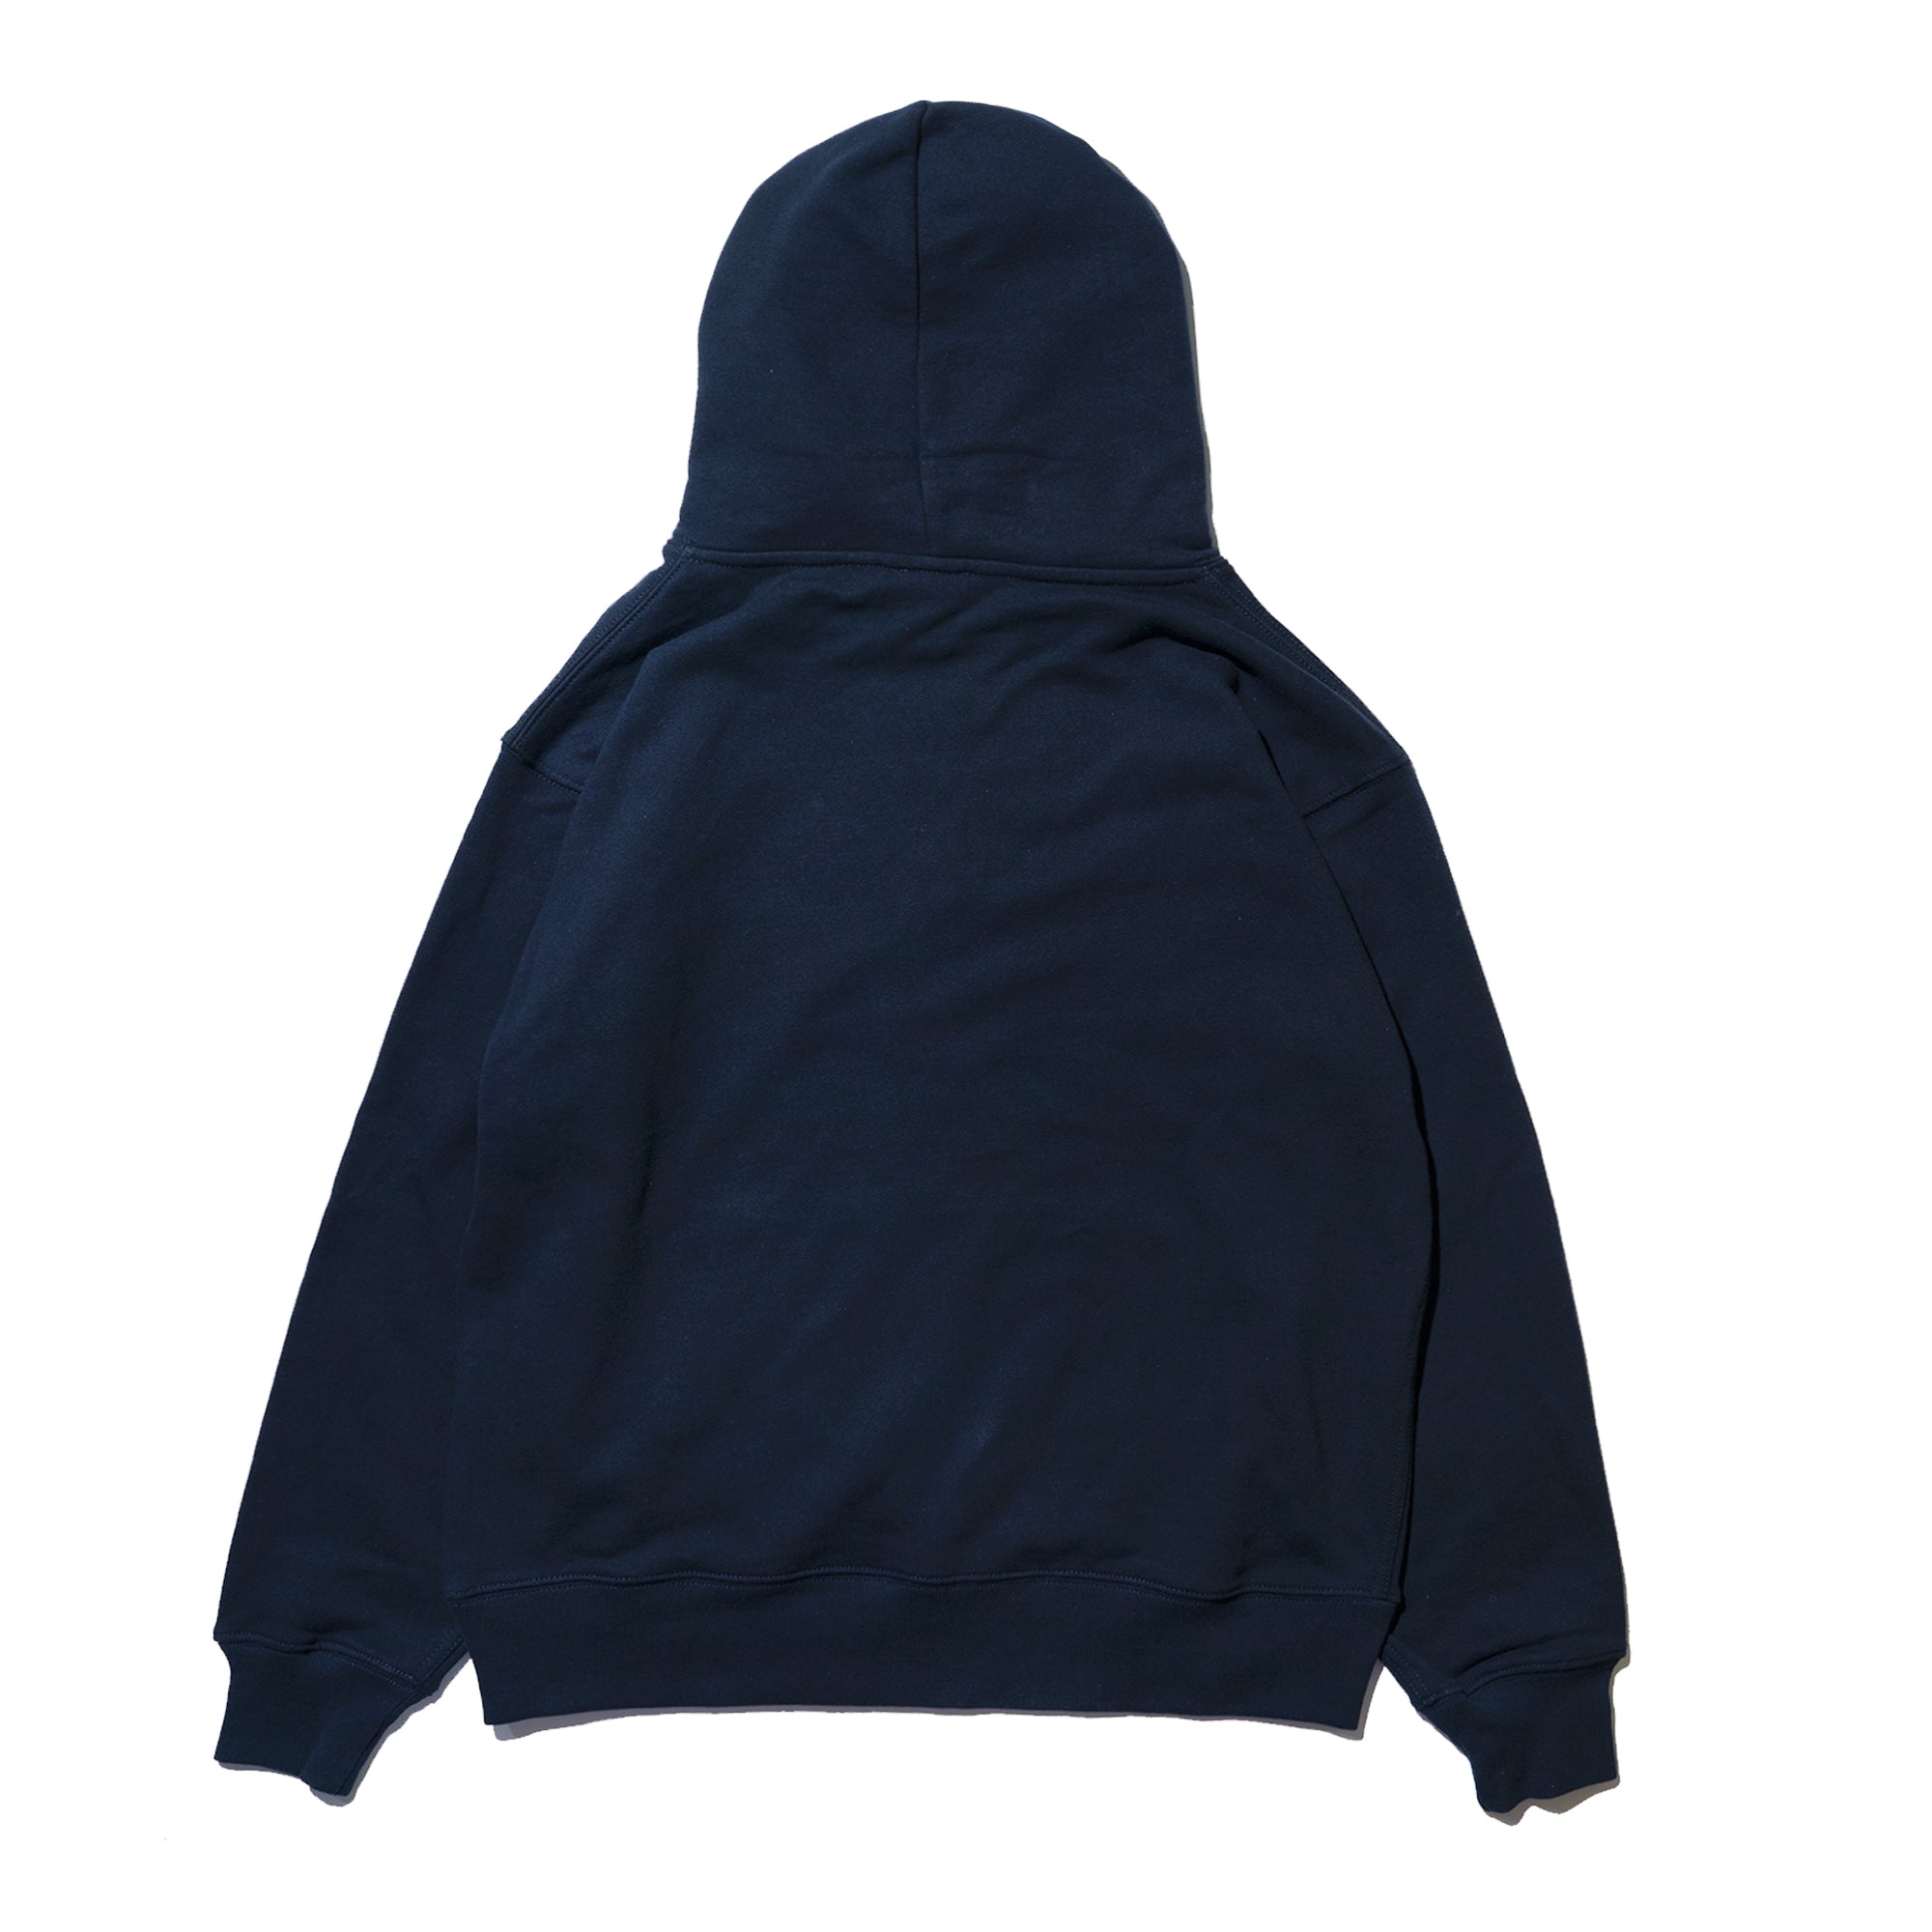 pulp exclusive hoodie